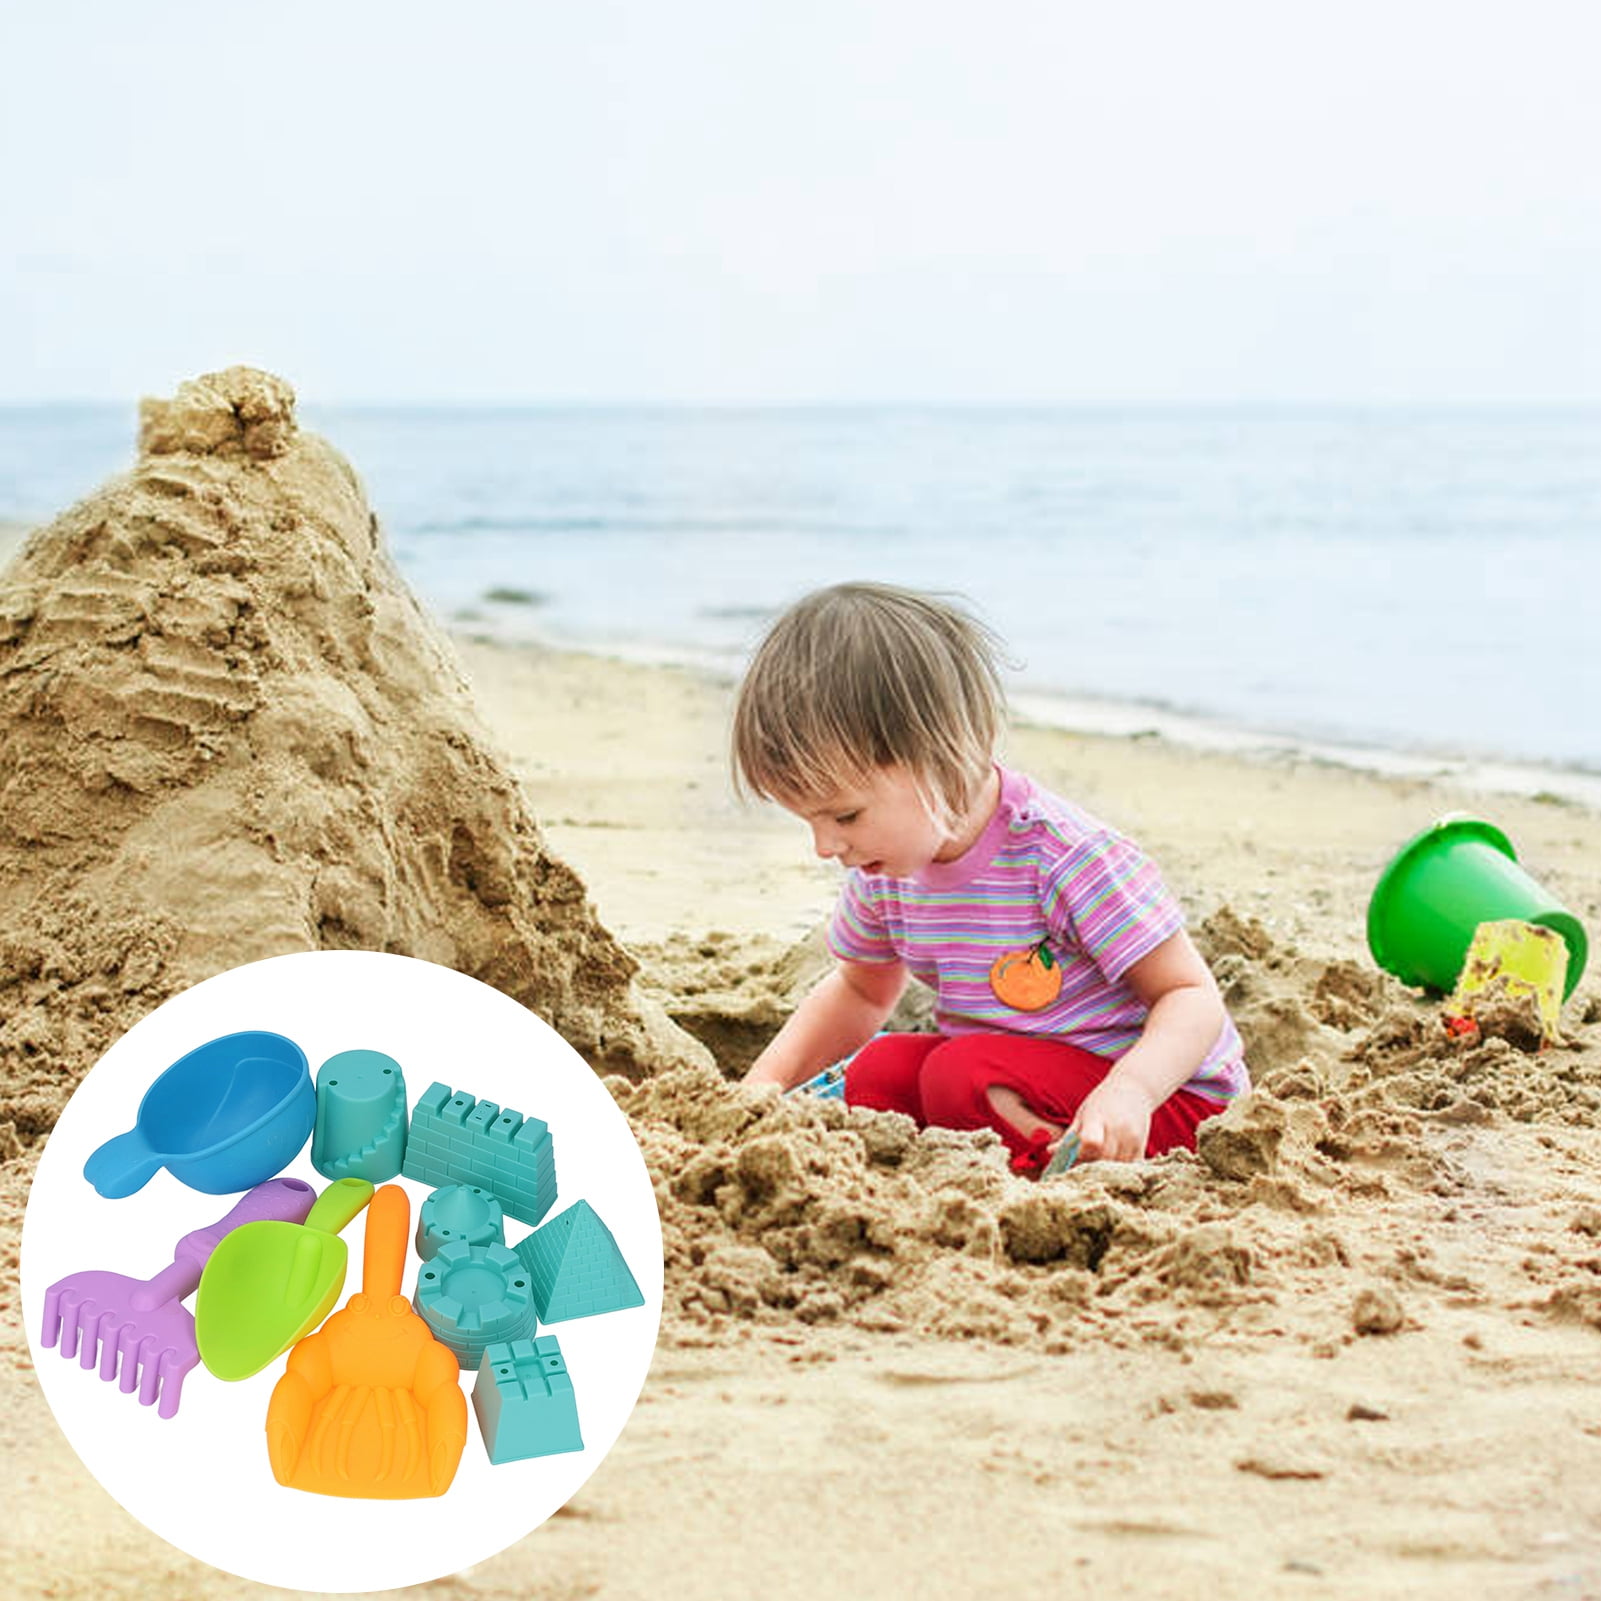 Details about   Summer Fun 6 Piece Children's Kid's Mini Toy Beach/Sandbox Tool Play set 